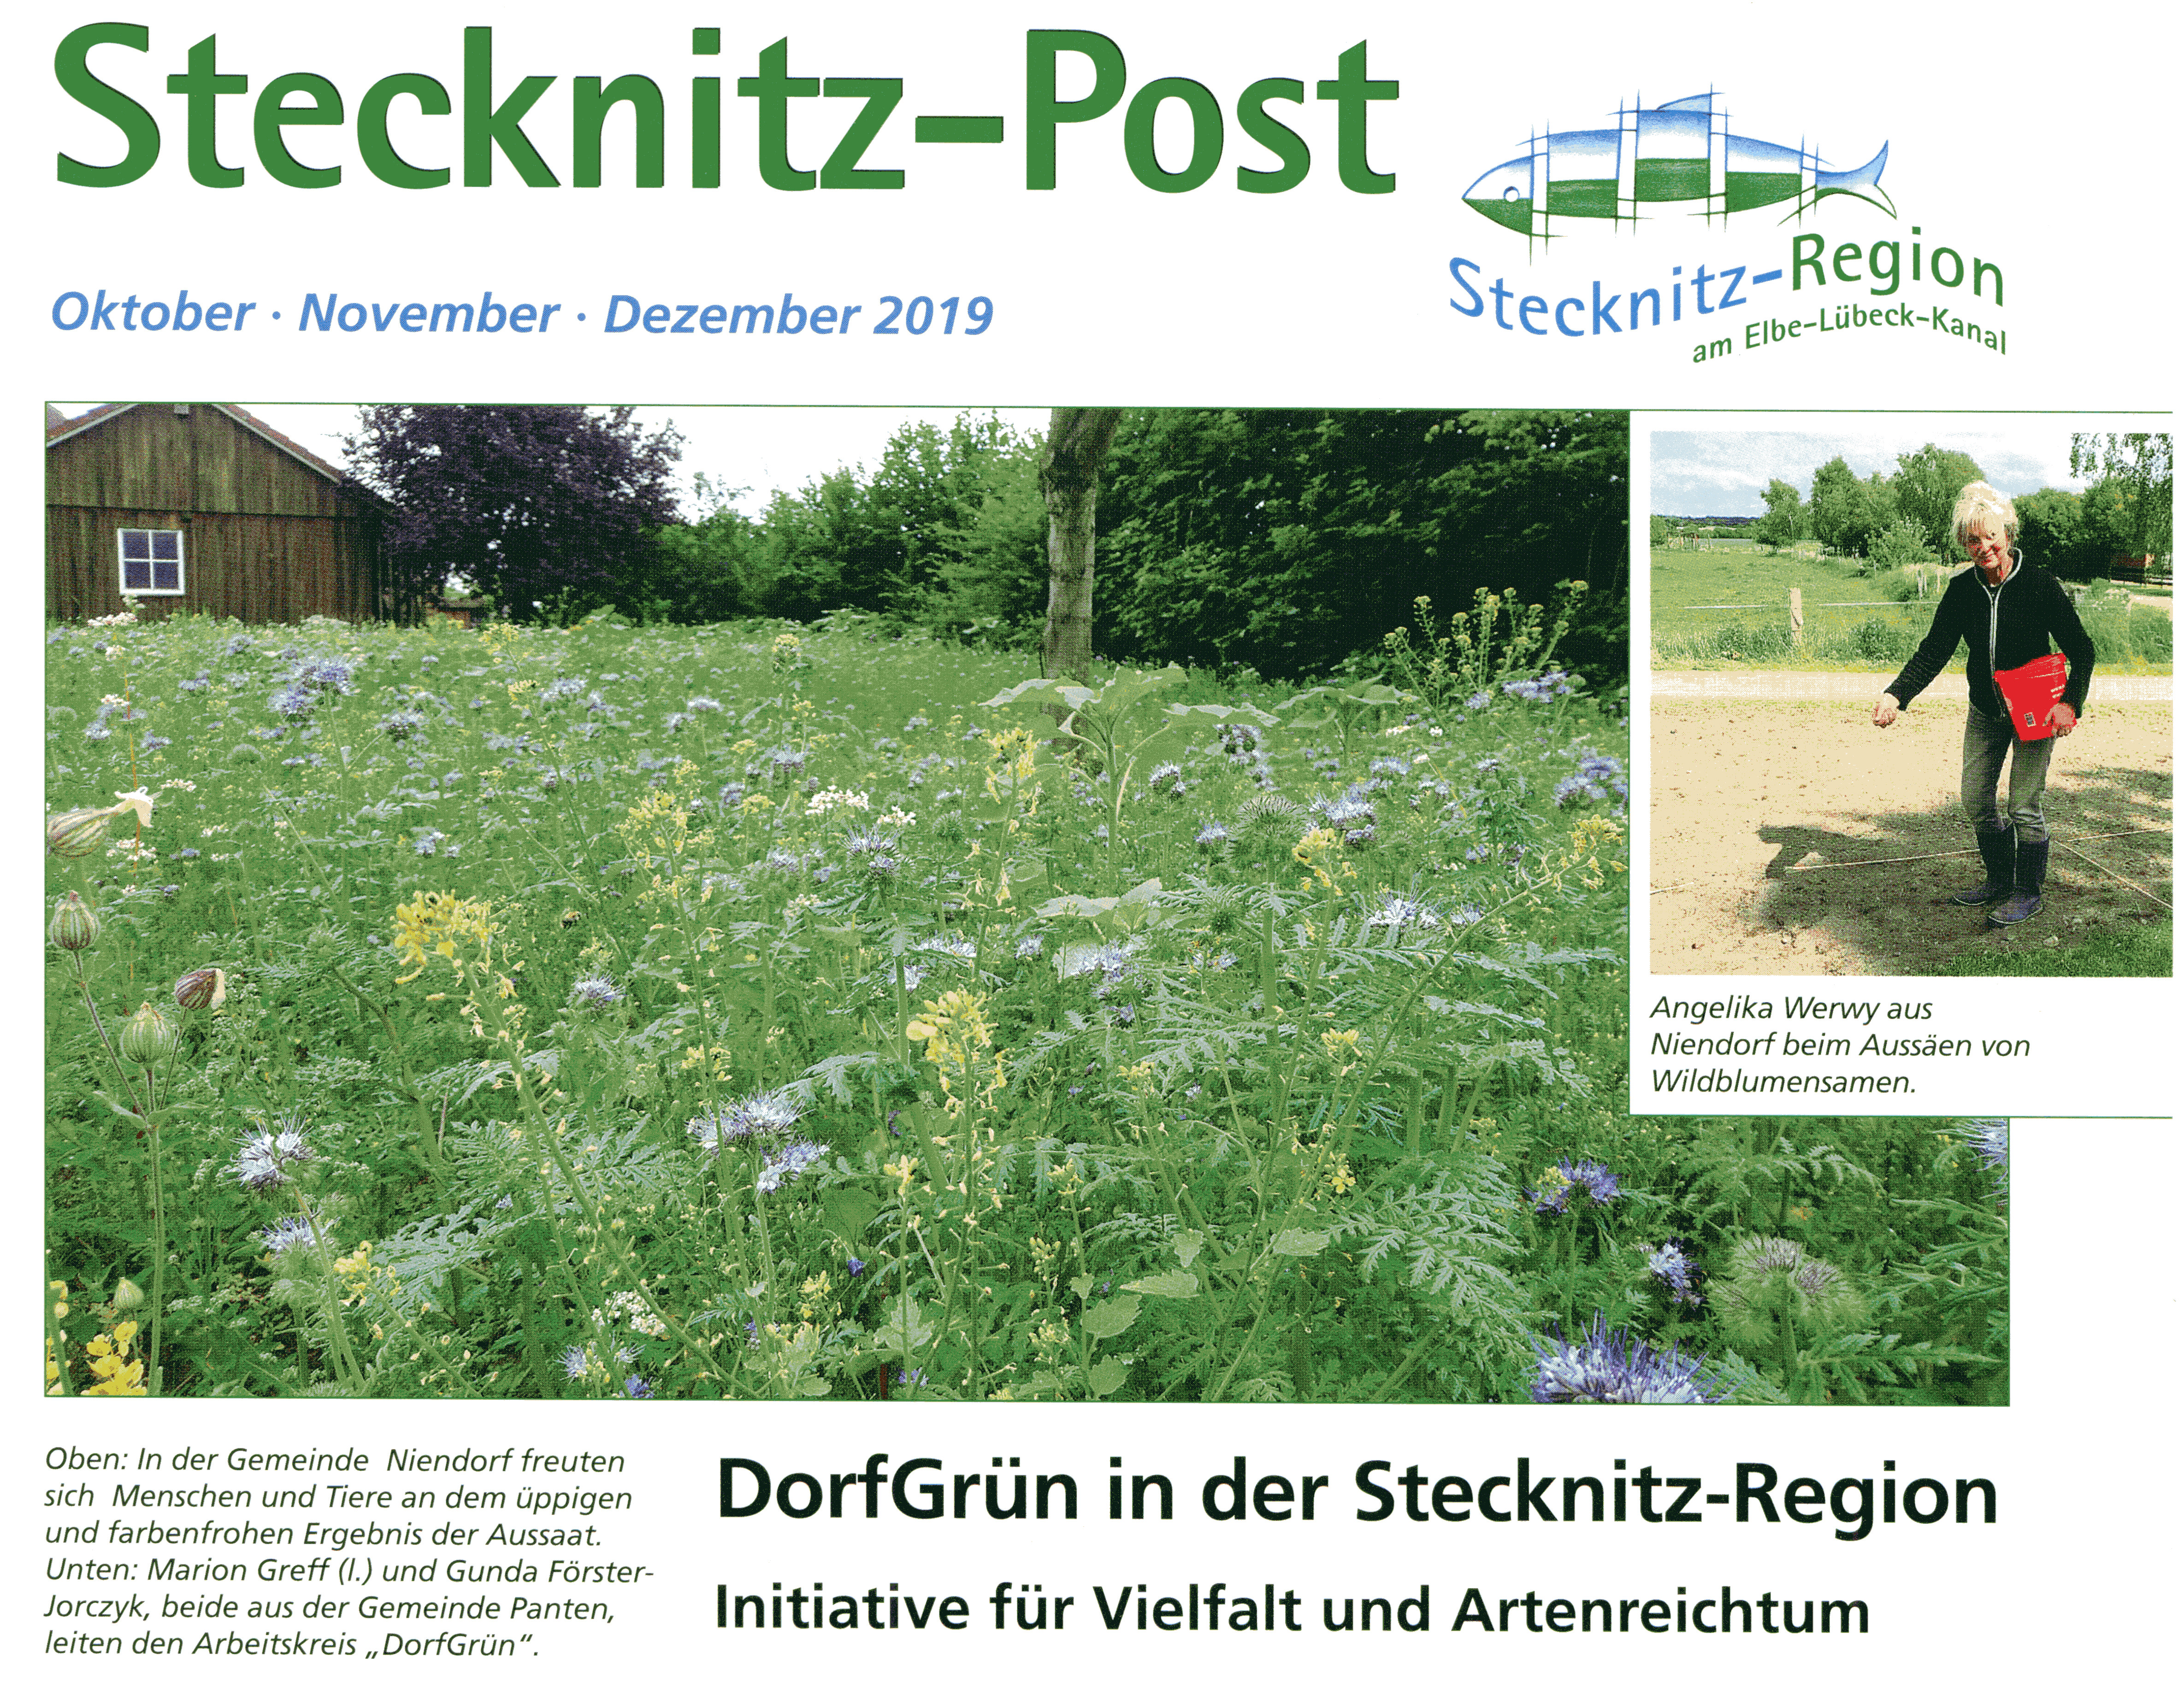 Stecknitz-Post Für Monate Oktober Bis Dezember Wird An Alle Haushalte Verteilt